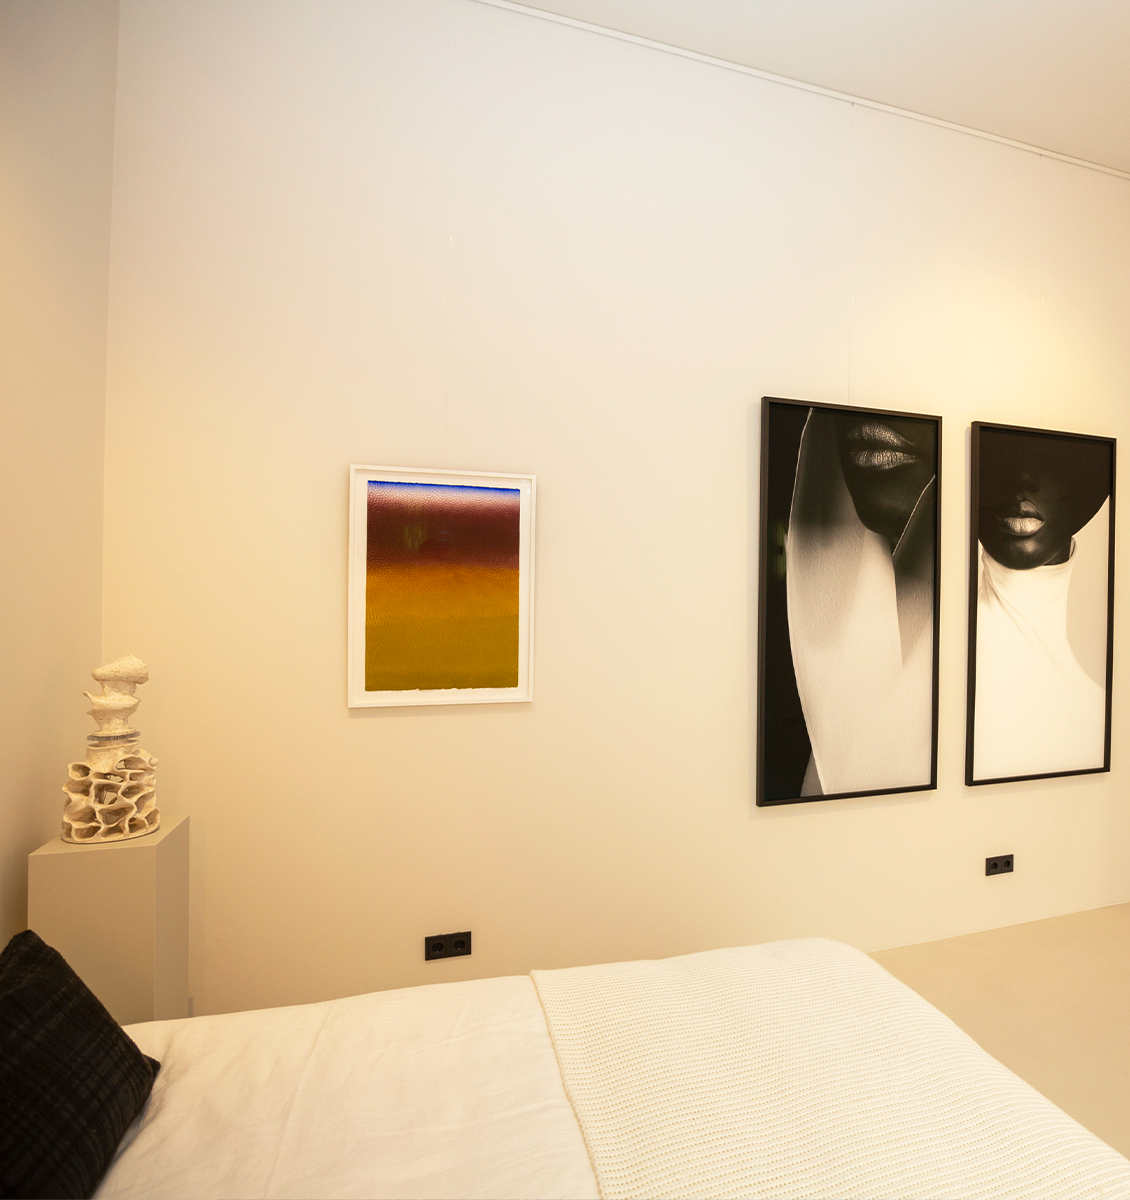 NL slaapkamer met kunstwerken aan muur